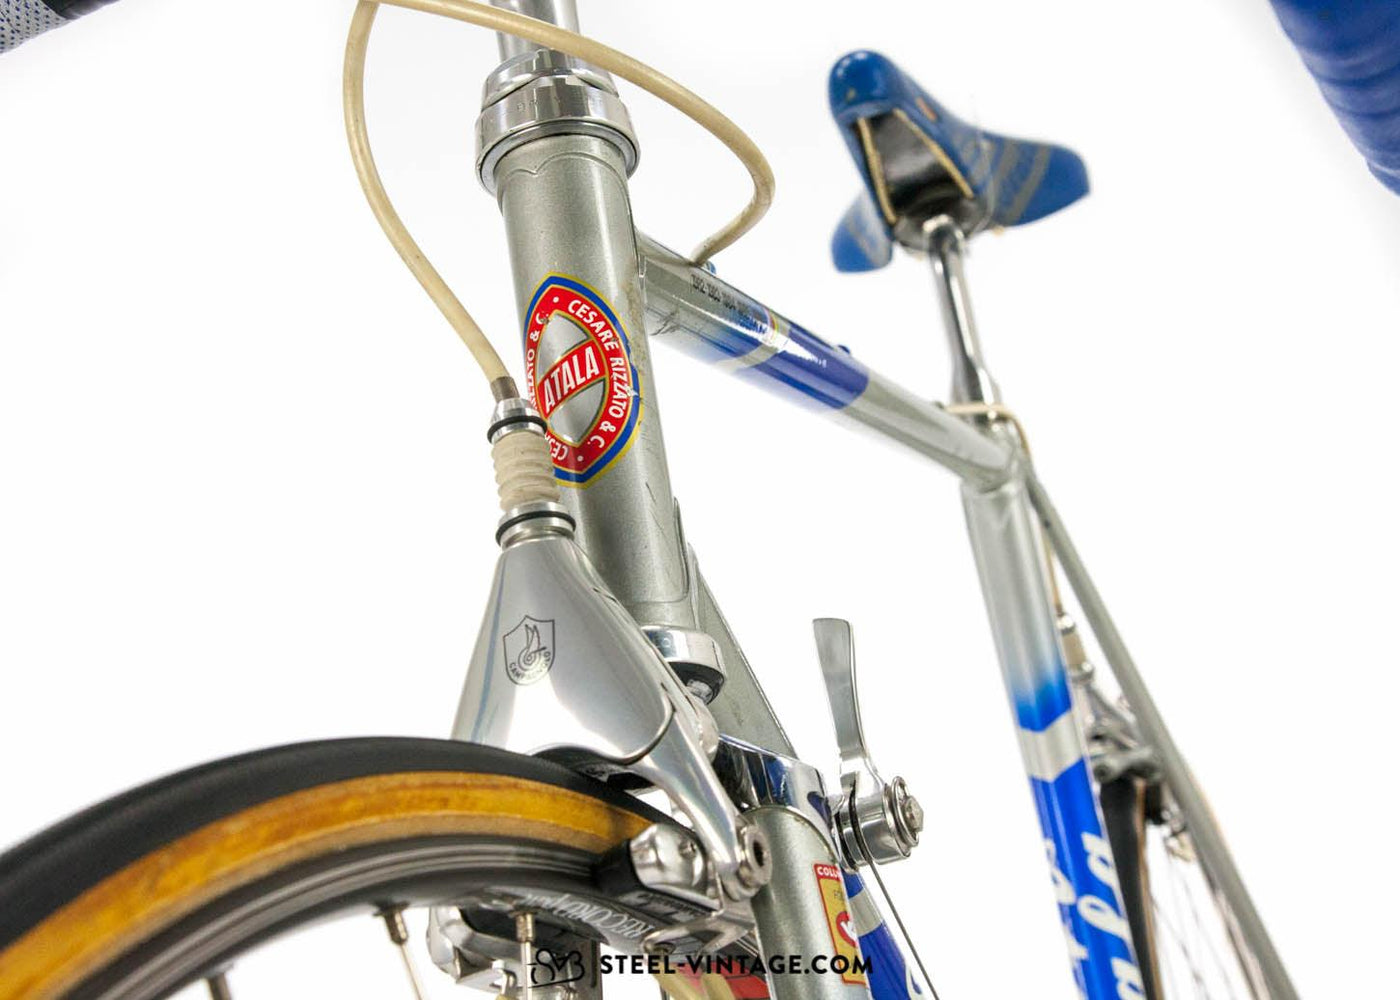 Atala Professionisti SLX Vintage Road Bike 1980s - Steel Vintage Bikes